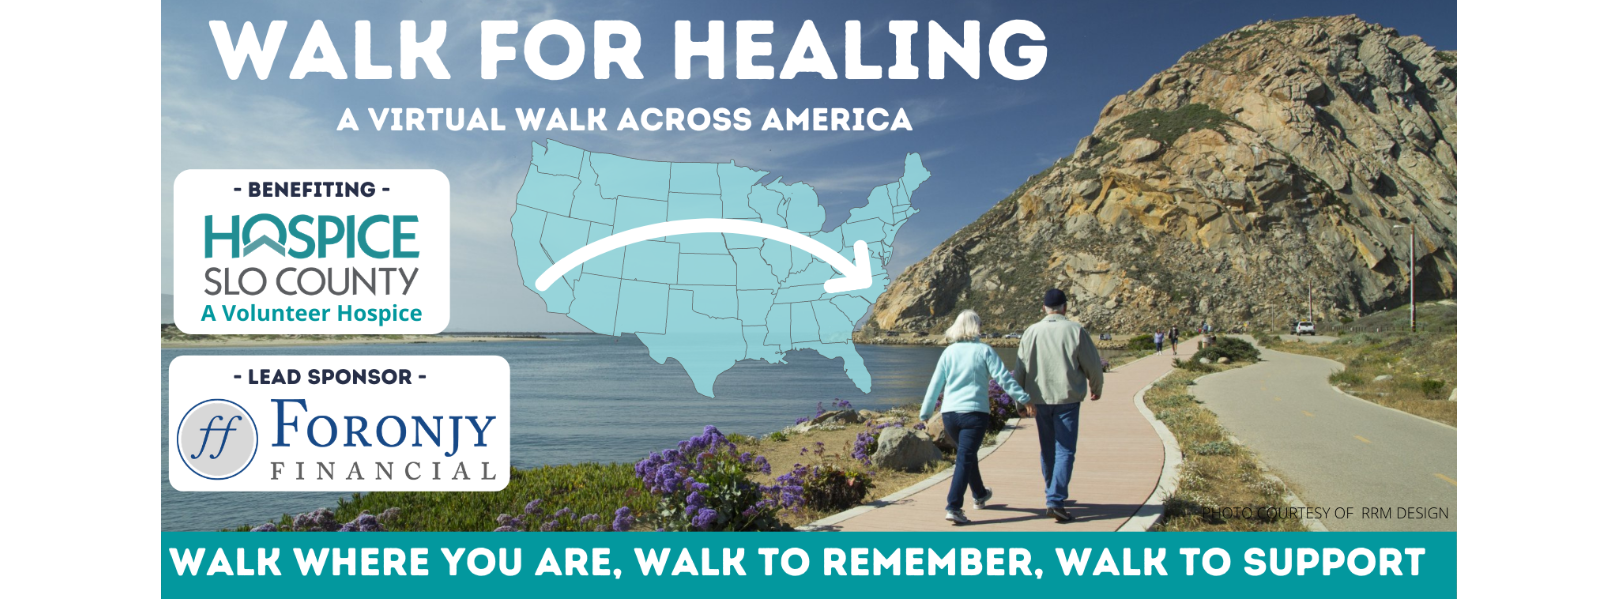 WALK FOR HEALING